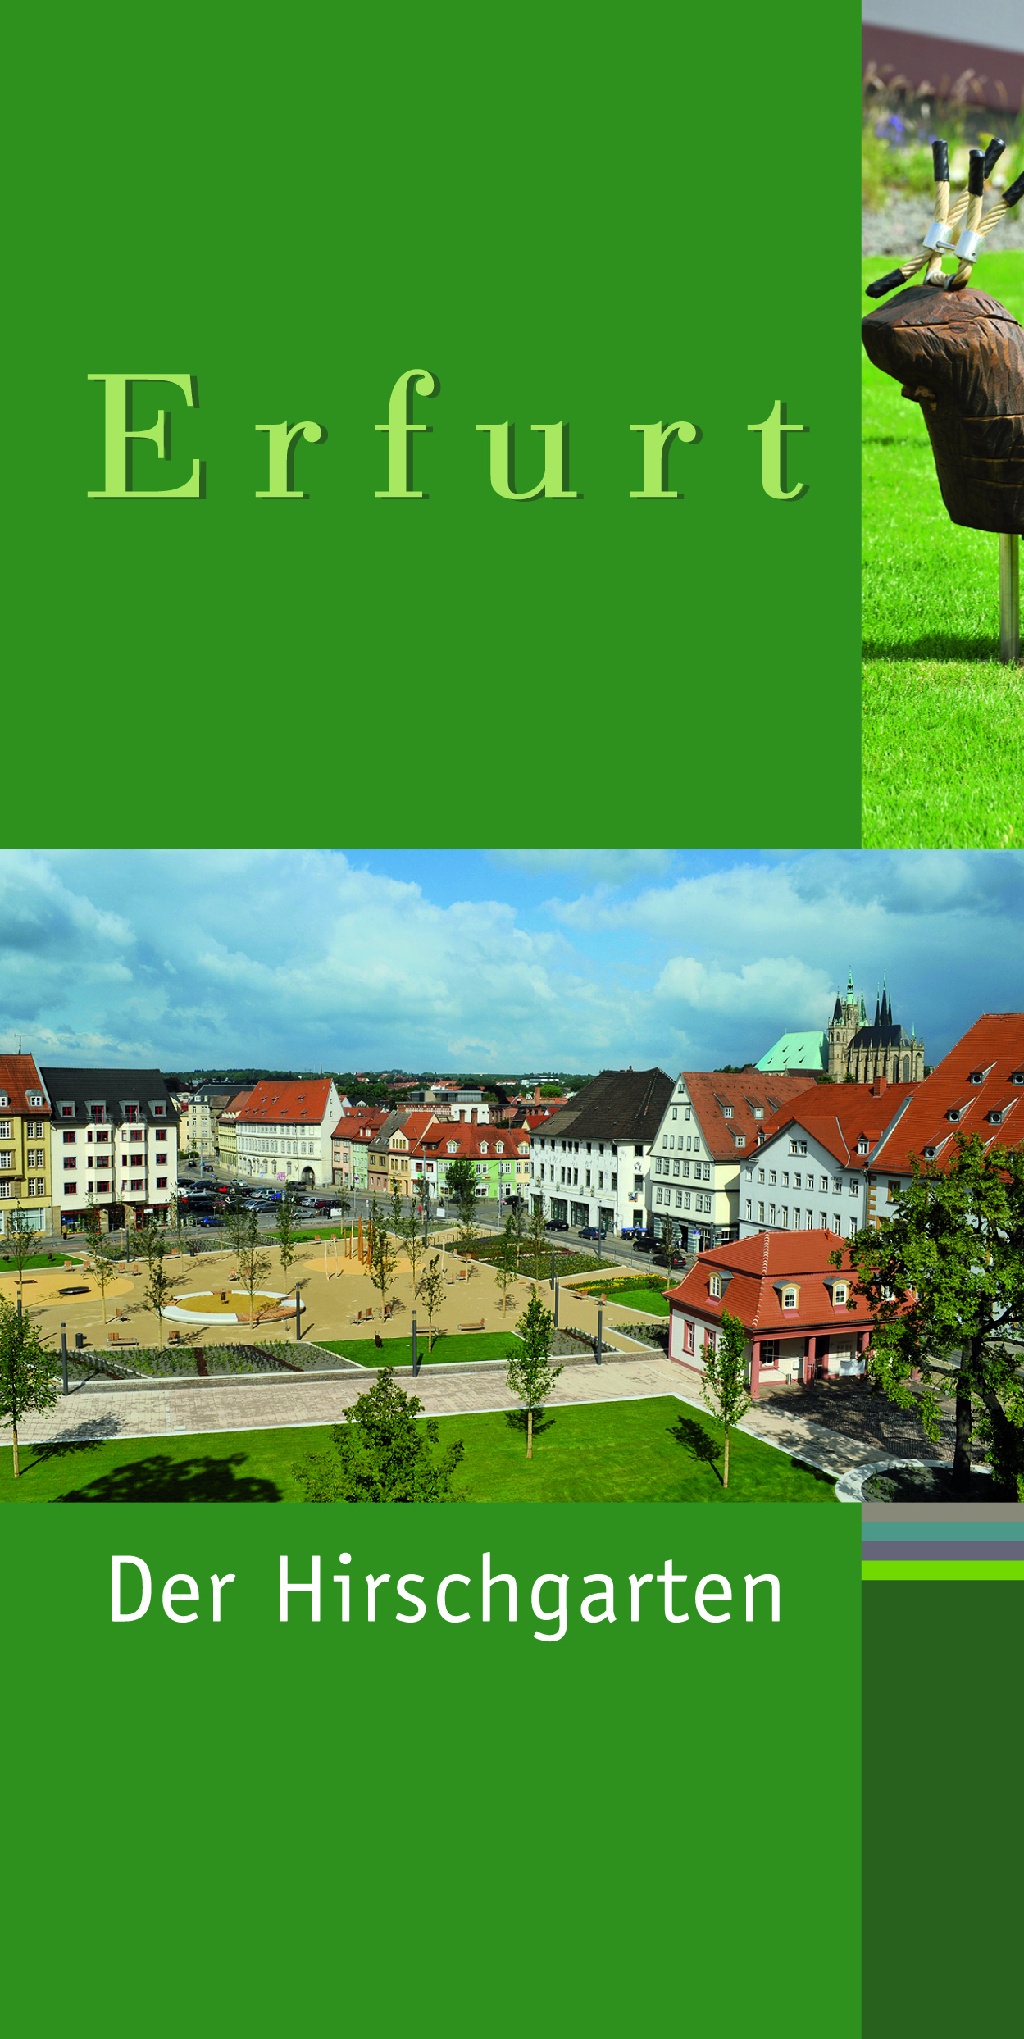 „Erfurts grüne Reihe“, Der Hirschgarten, Bild: Dr. Rüdiger Kirsten, Garten- und Friedhofsamt Erfurt